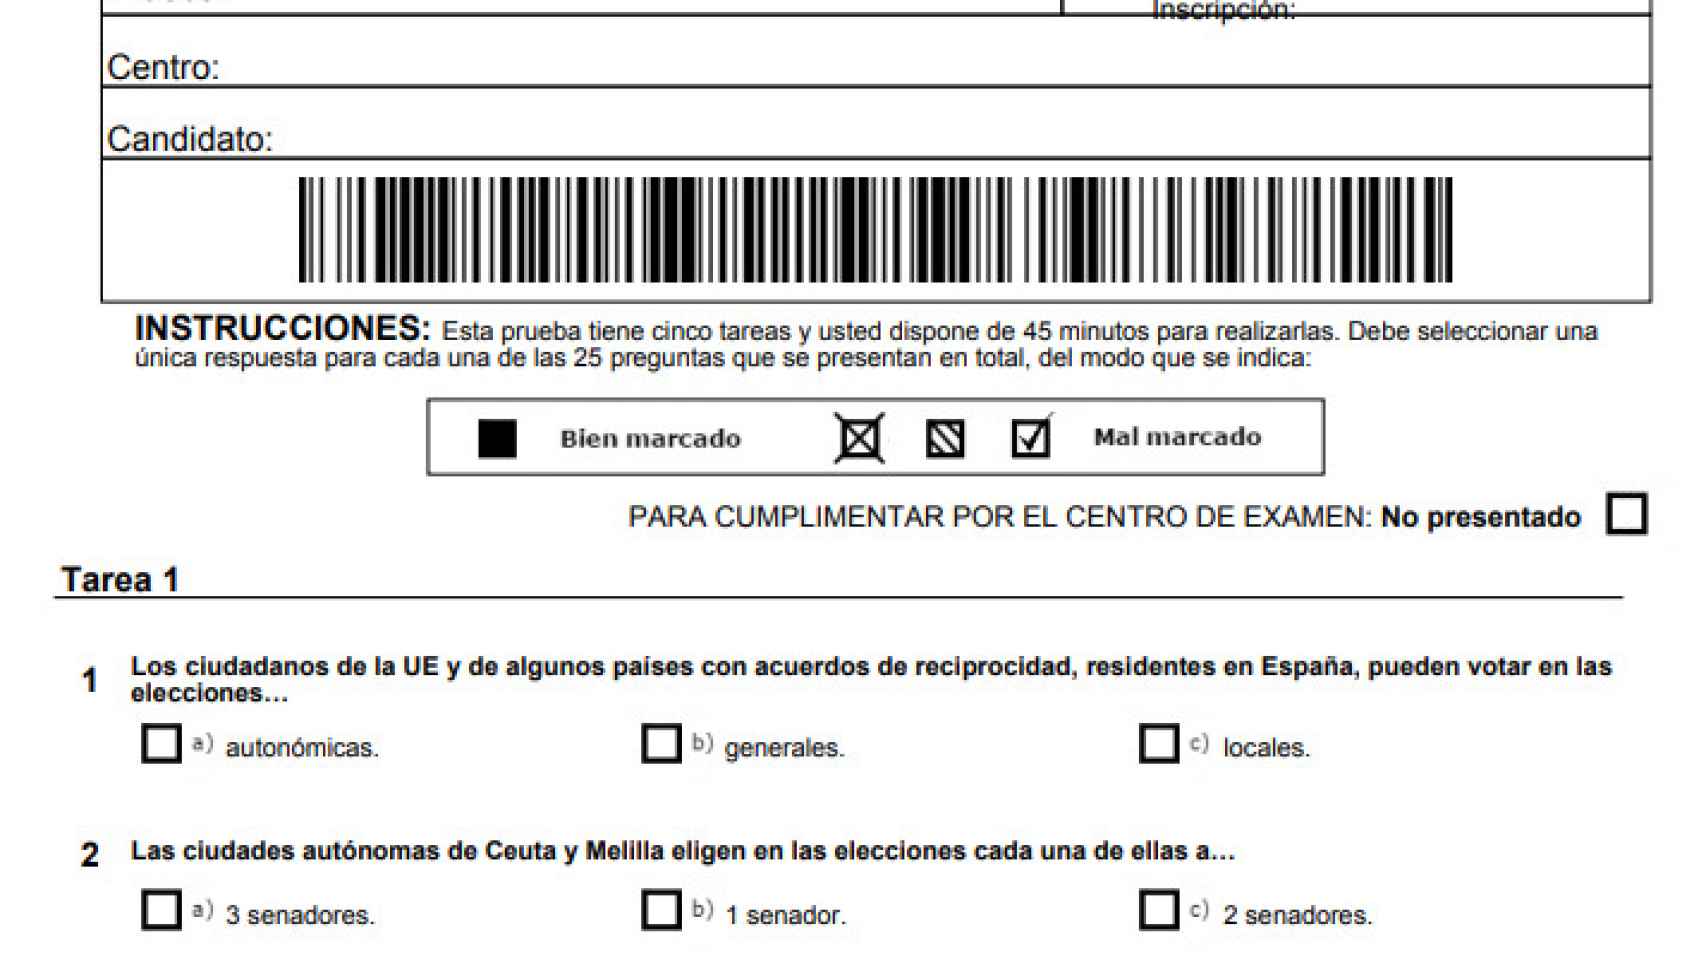 Modelo de prueba CCSE del Instituto Cervantes para la nacionalidad española